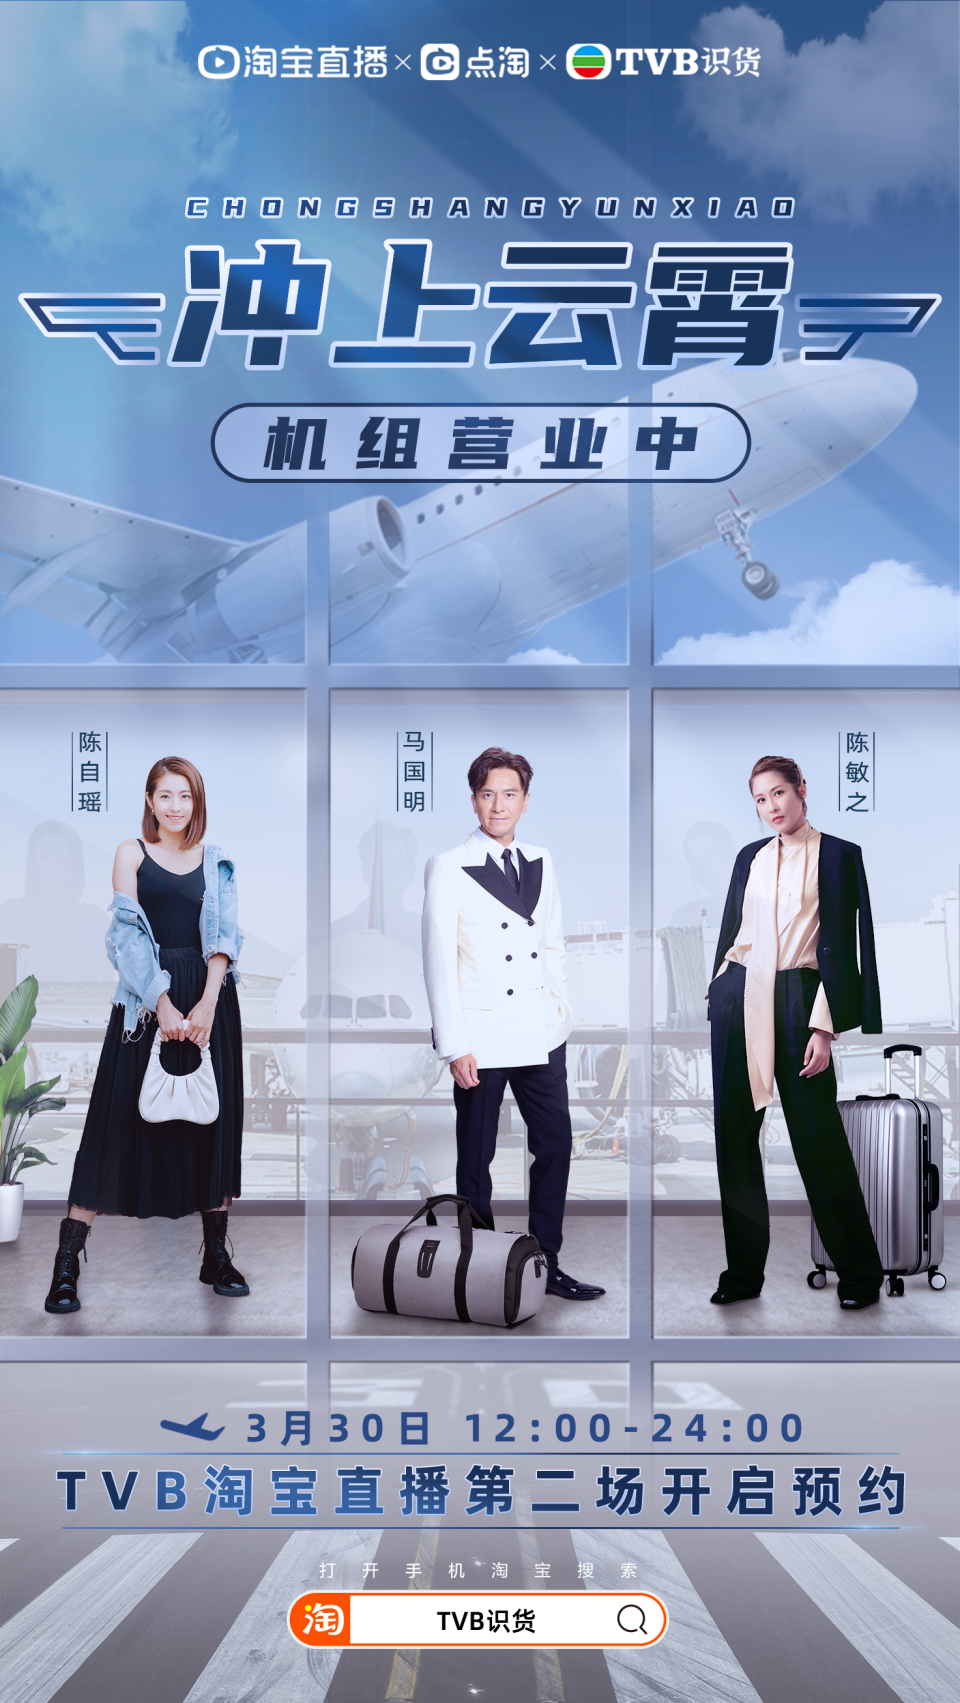 TVB淘寶第二場直播銷貨7320萬人幣　690萬人次觀看